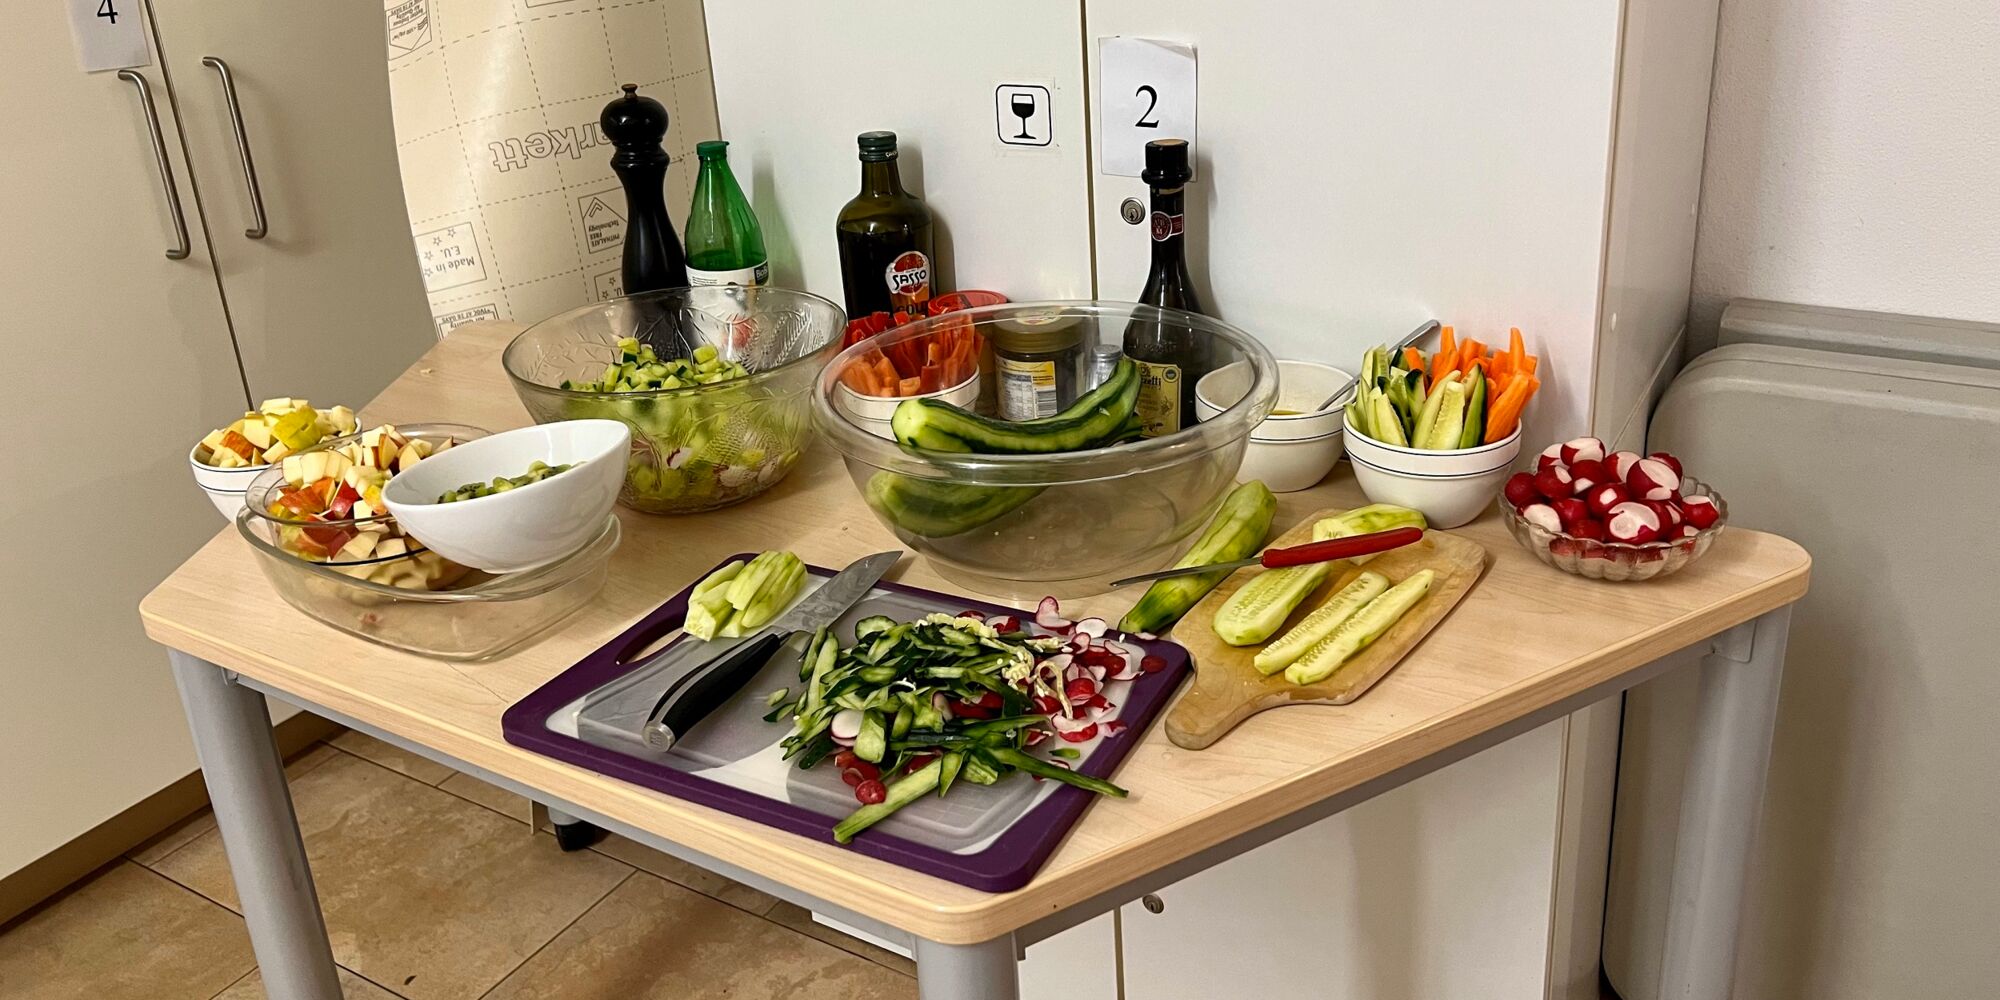 Hier man verschiedenes geschnittenes Obst und Gemüse auf einem Tisch angerichtet.